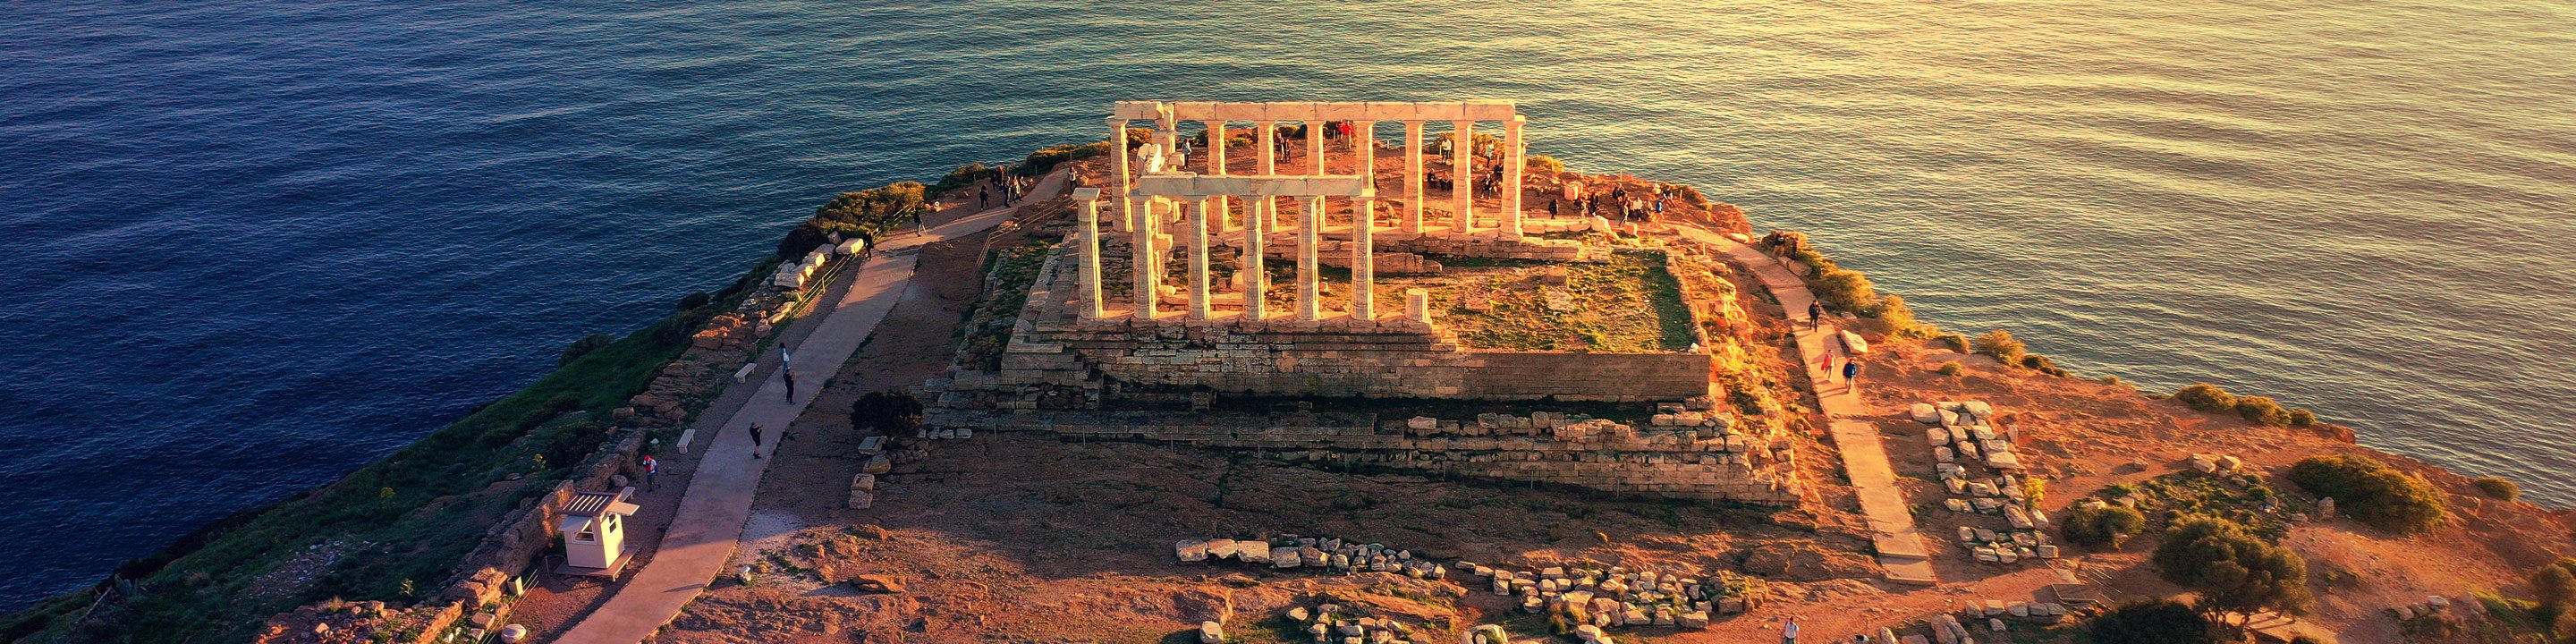 Poseidon Temple (Cape Sounio)